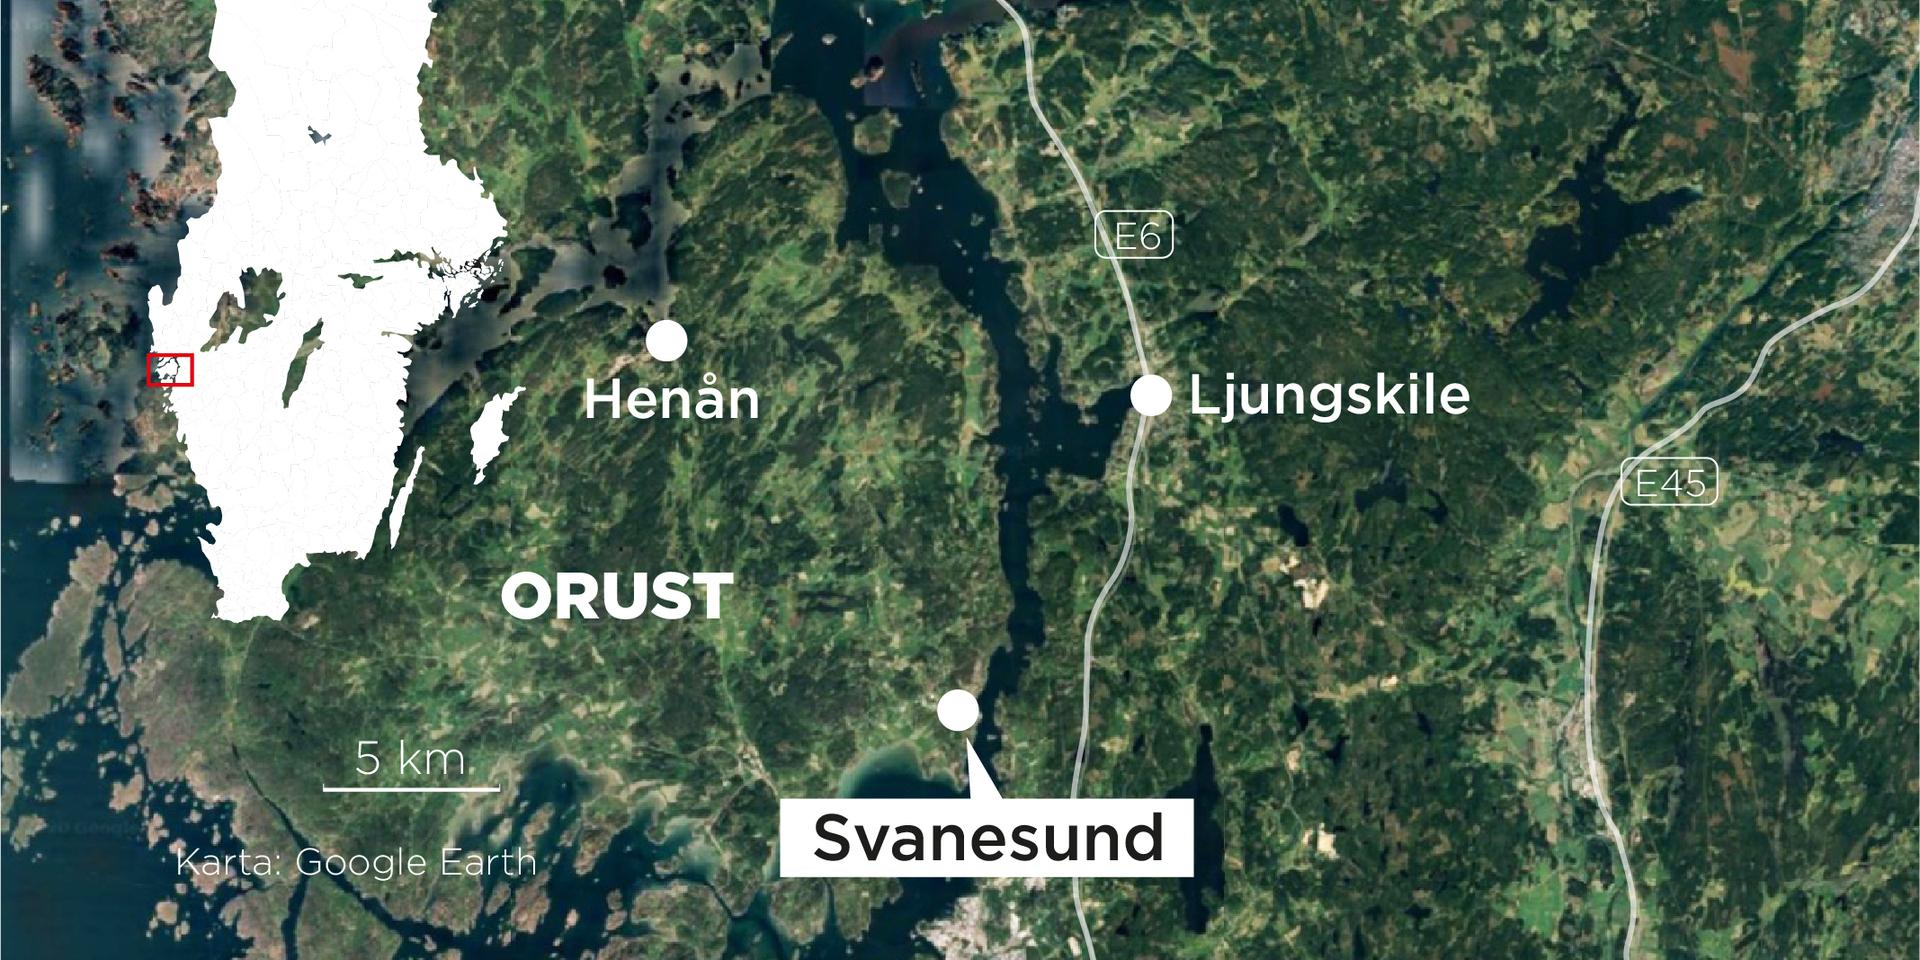 Polis och resurser från försvaret sökte efter en 81-årig man som är försvunnen i Svanesund på Orust i Bohuslän. Mannen påträffades på tisdagseftermiddagen.